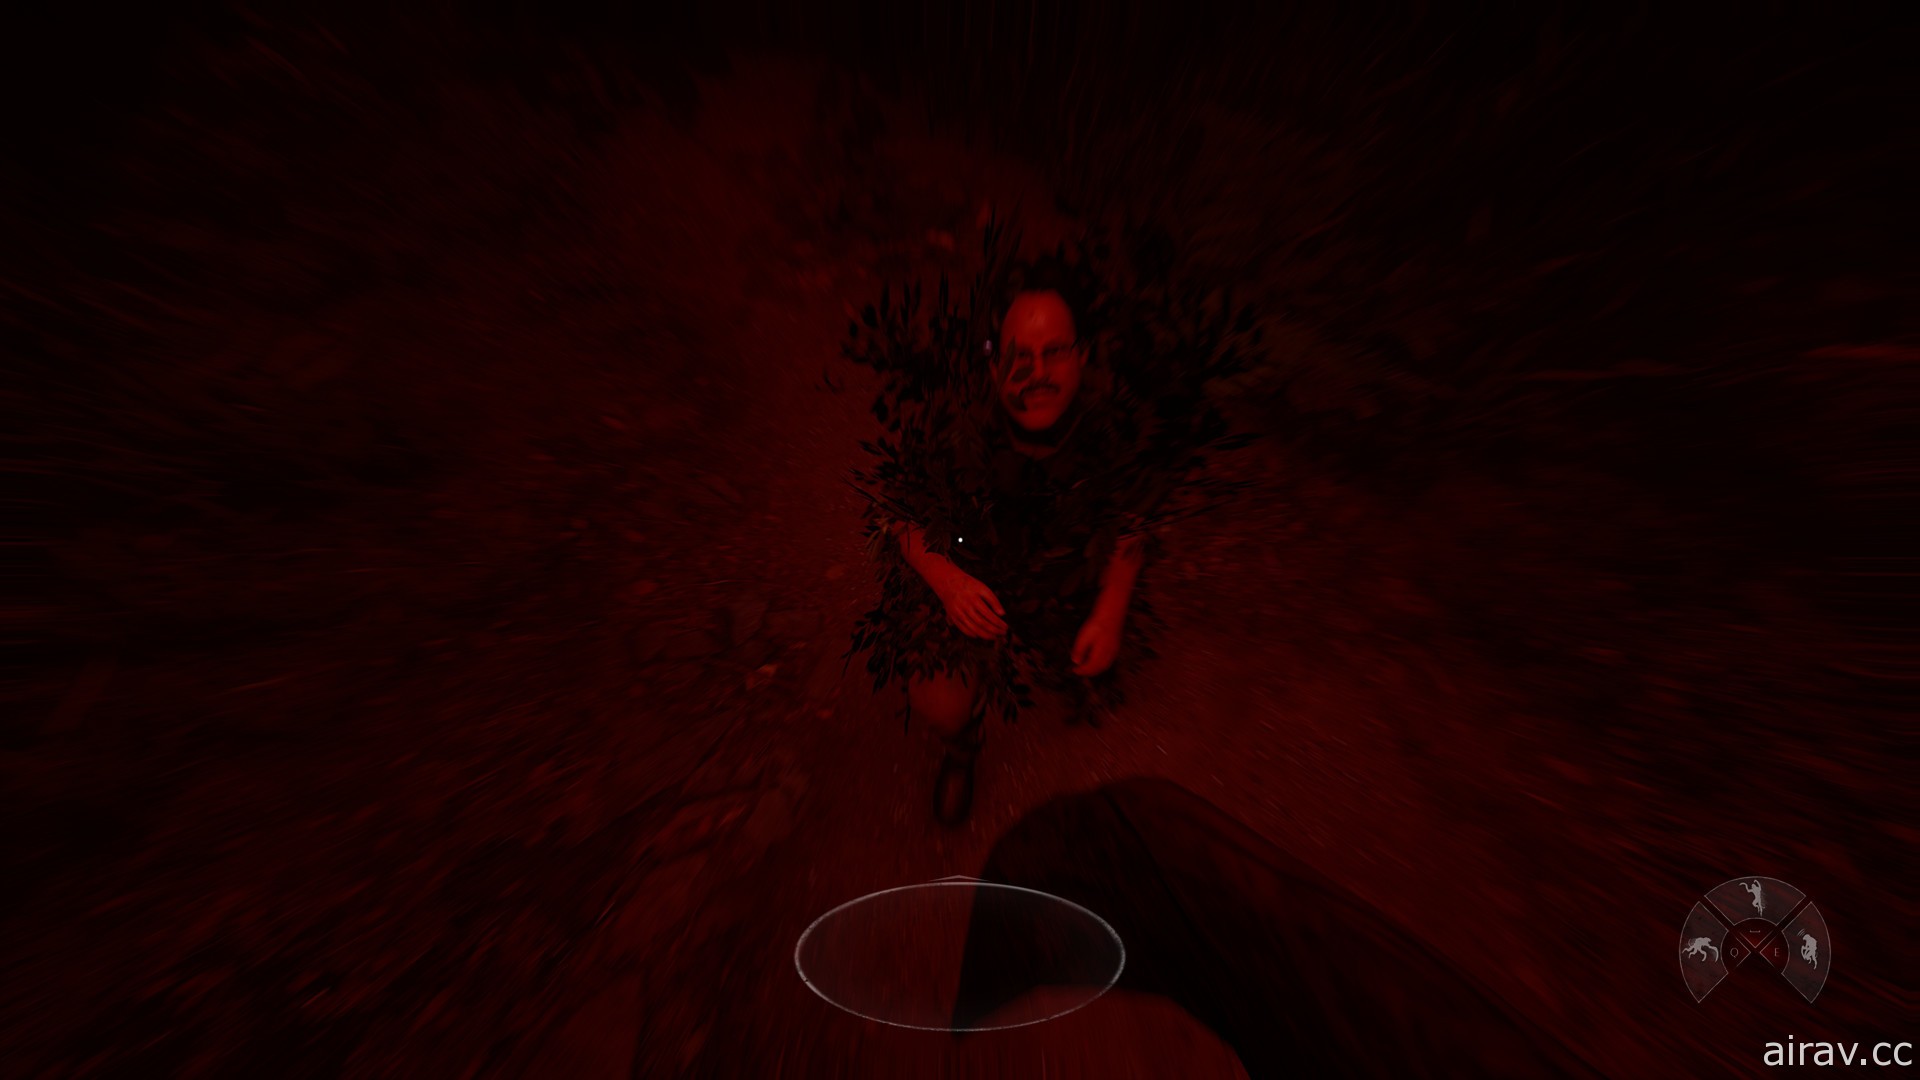 非对称式恐怖游戏《In Silence》展开抢先体验 扮演怪物或幸存者体验追捕与反击